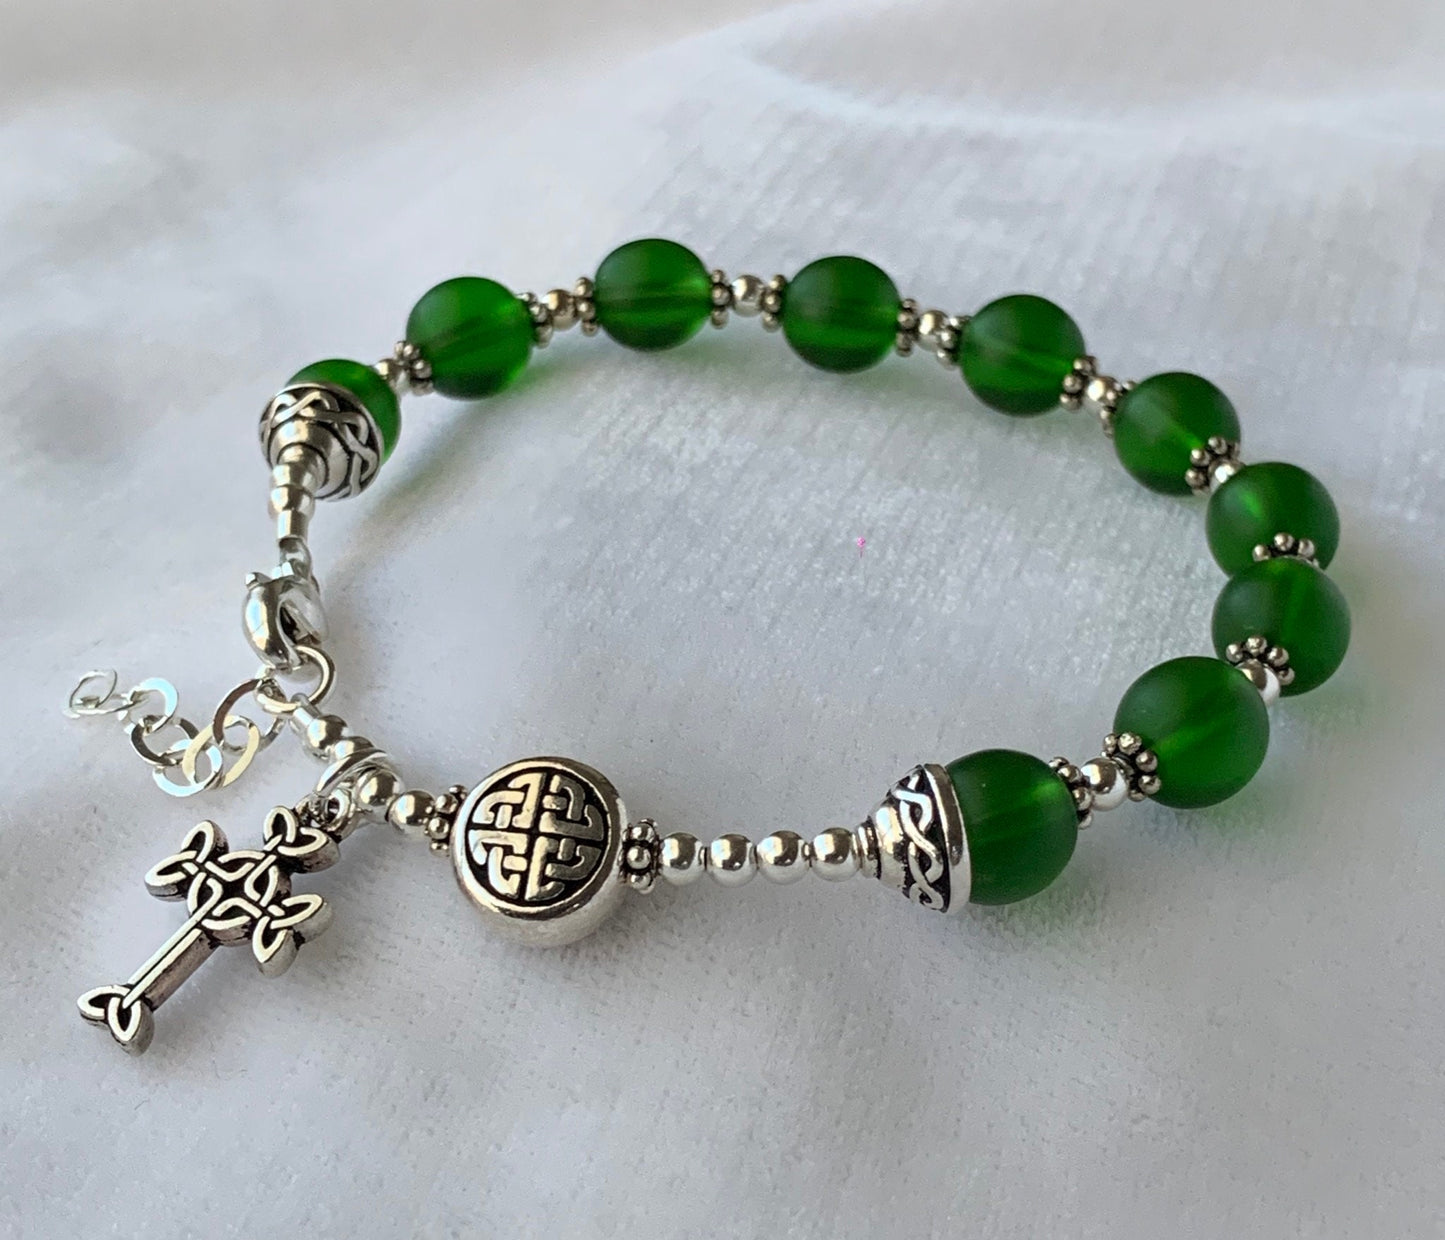 Celtic Sea Glass Green Rosary Bracelet, Sterling Silver Celtic Rosary Bracelet, One Decade Rosary Bracelet,Celtic Irish Knot Rosary Bracelet